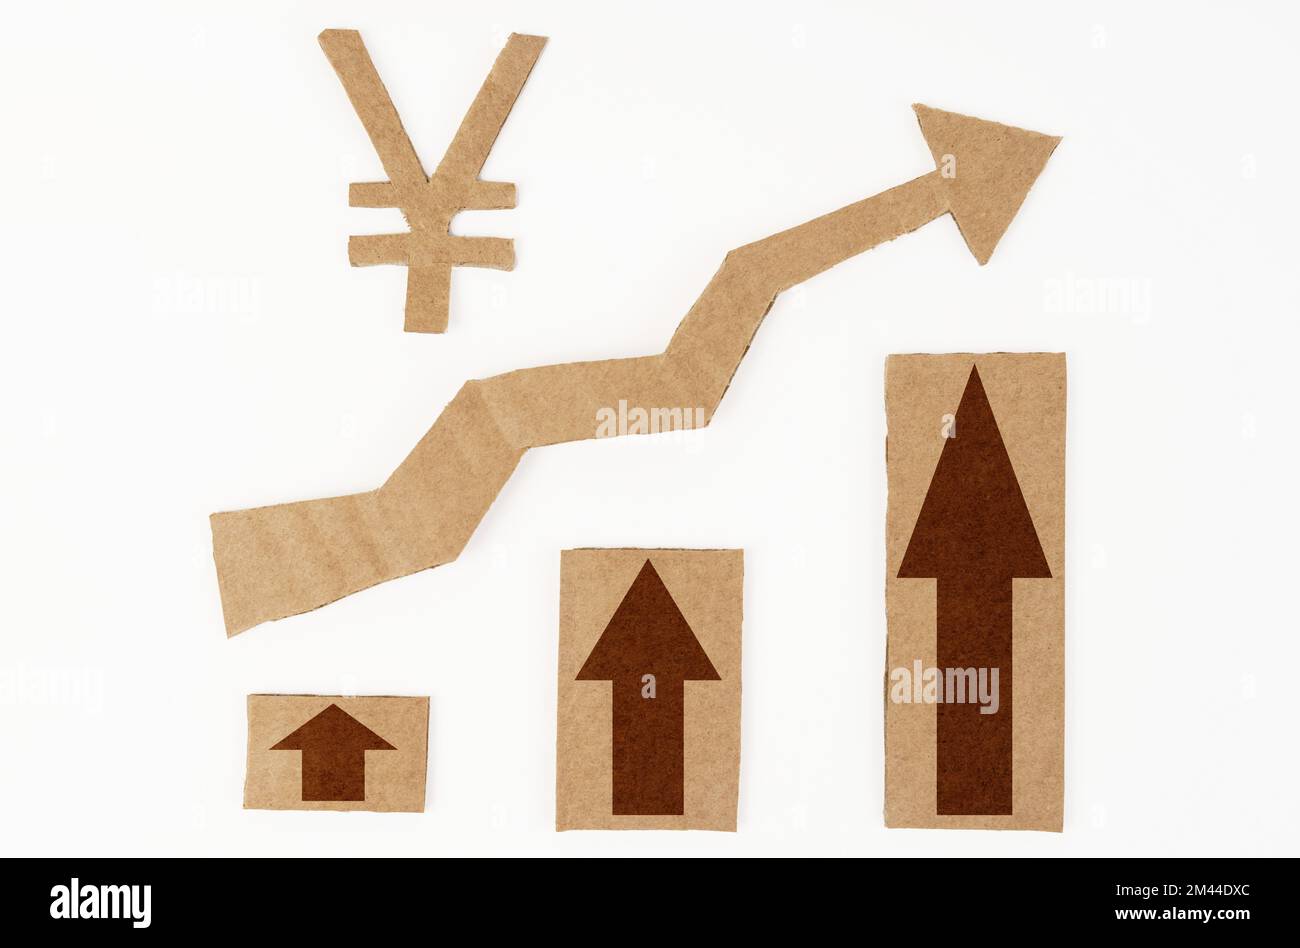 Le concept de croissance économique. Sur une surface blanche se trouve une carte avec des flèches vers le haut et un symbole yen. Le symbole, la flèche et le graphique sont en carton Banque D'Images